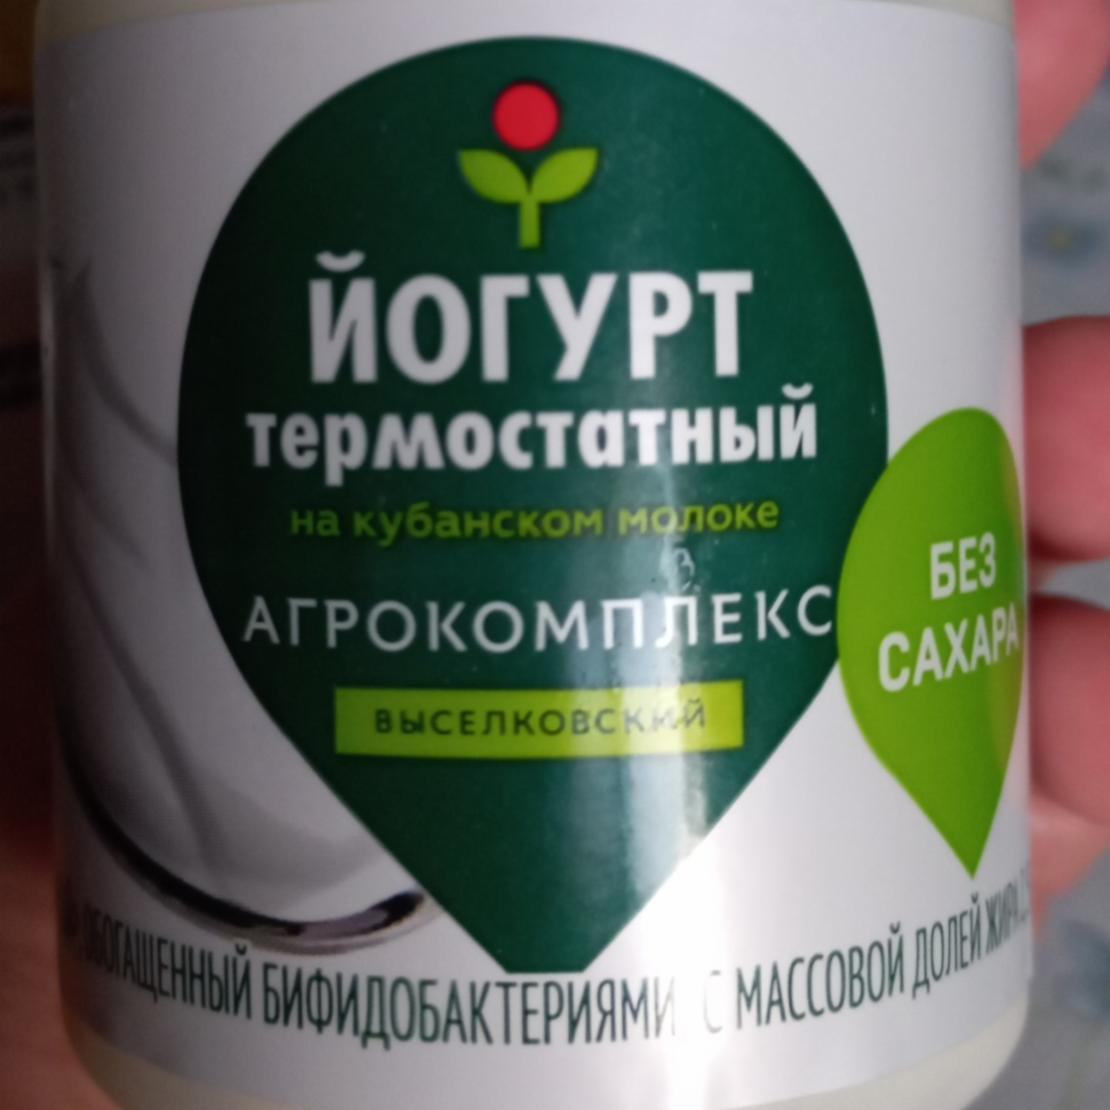 Фото - йогурт термостатный Агрокомплекс выселковский